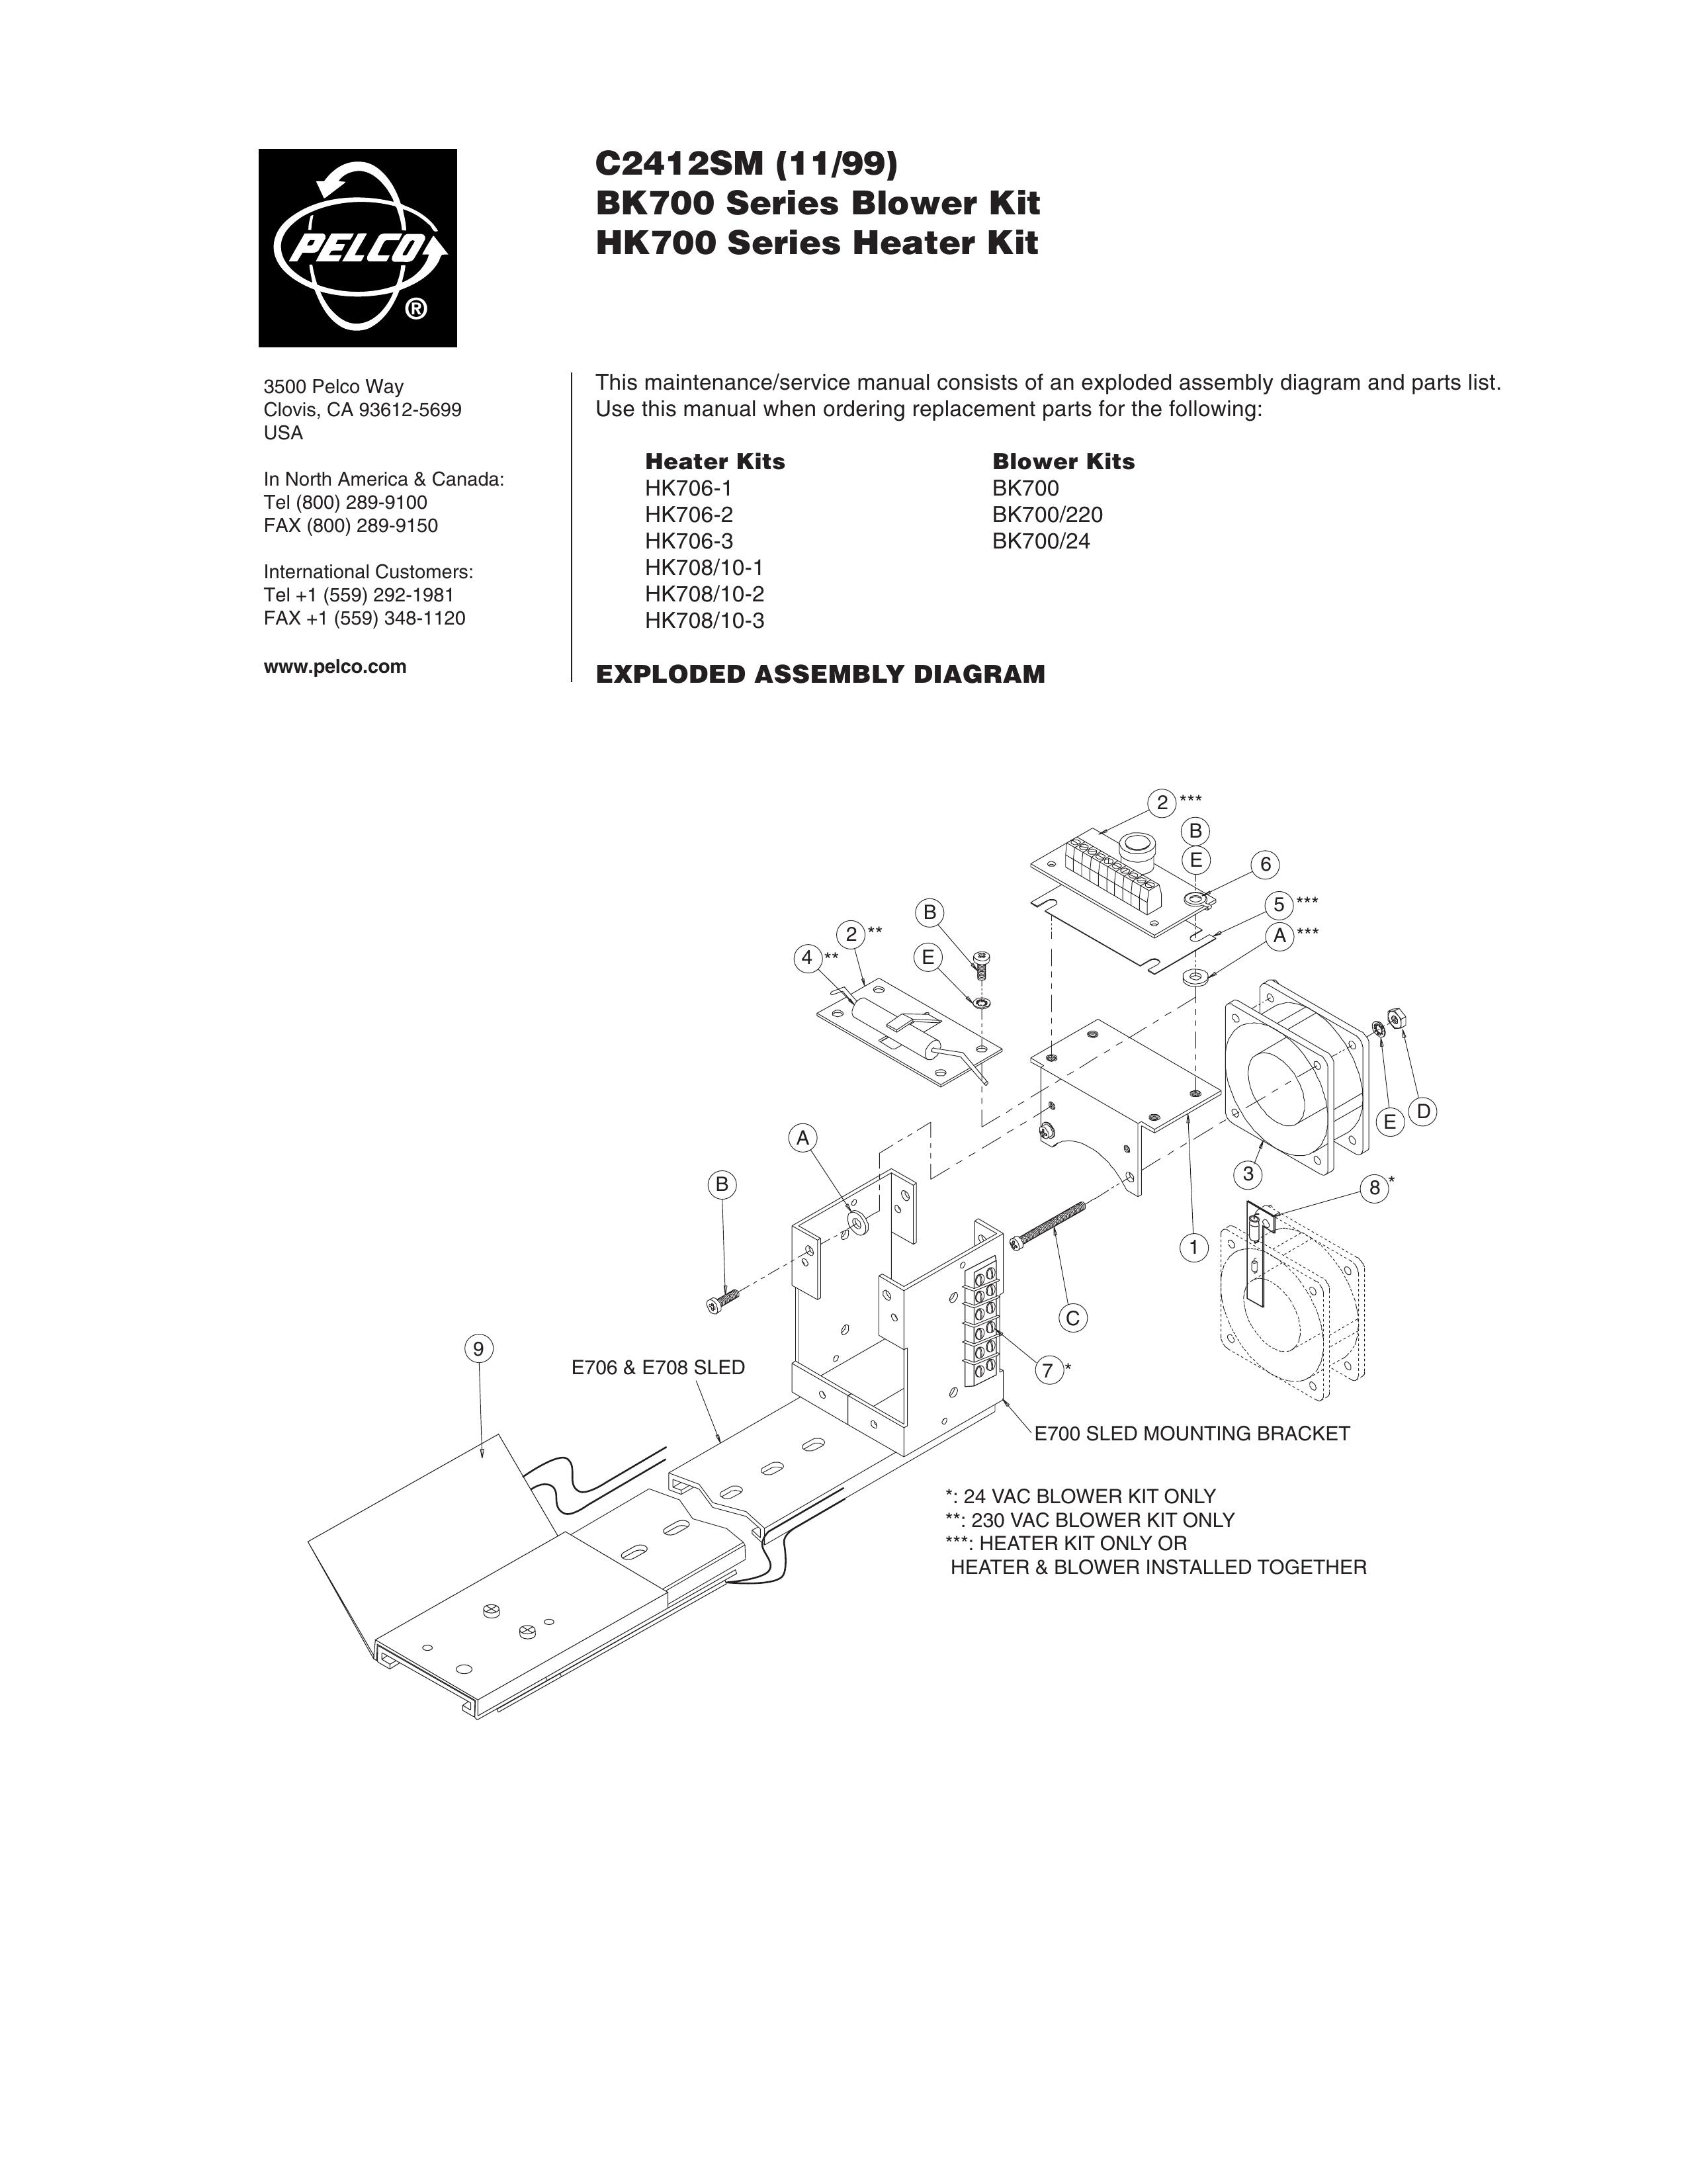 Pelco HK706-3 Blower User Manual